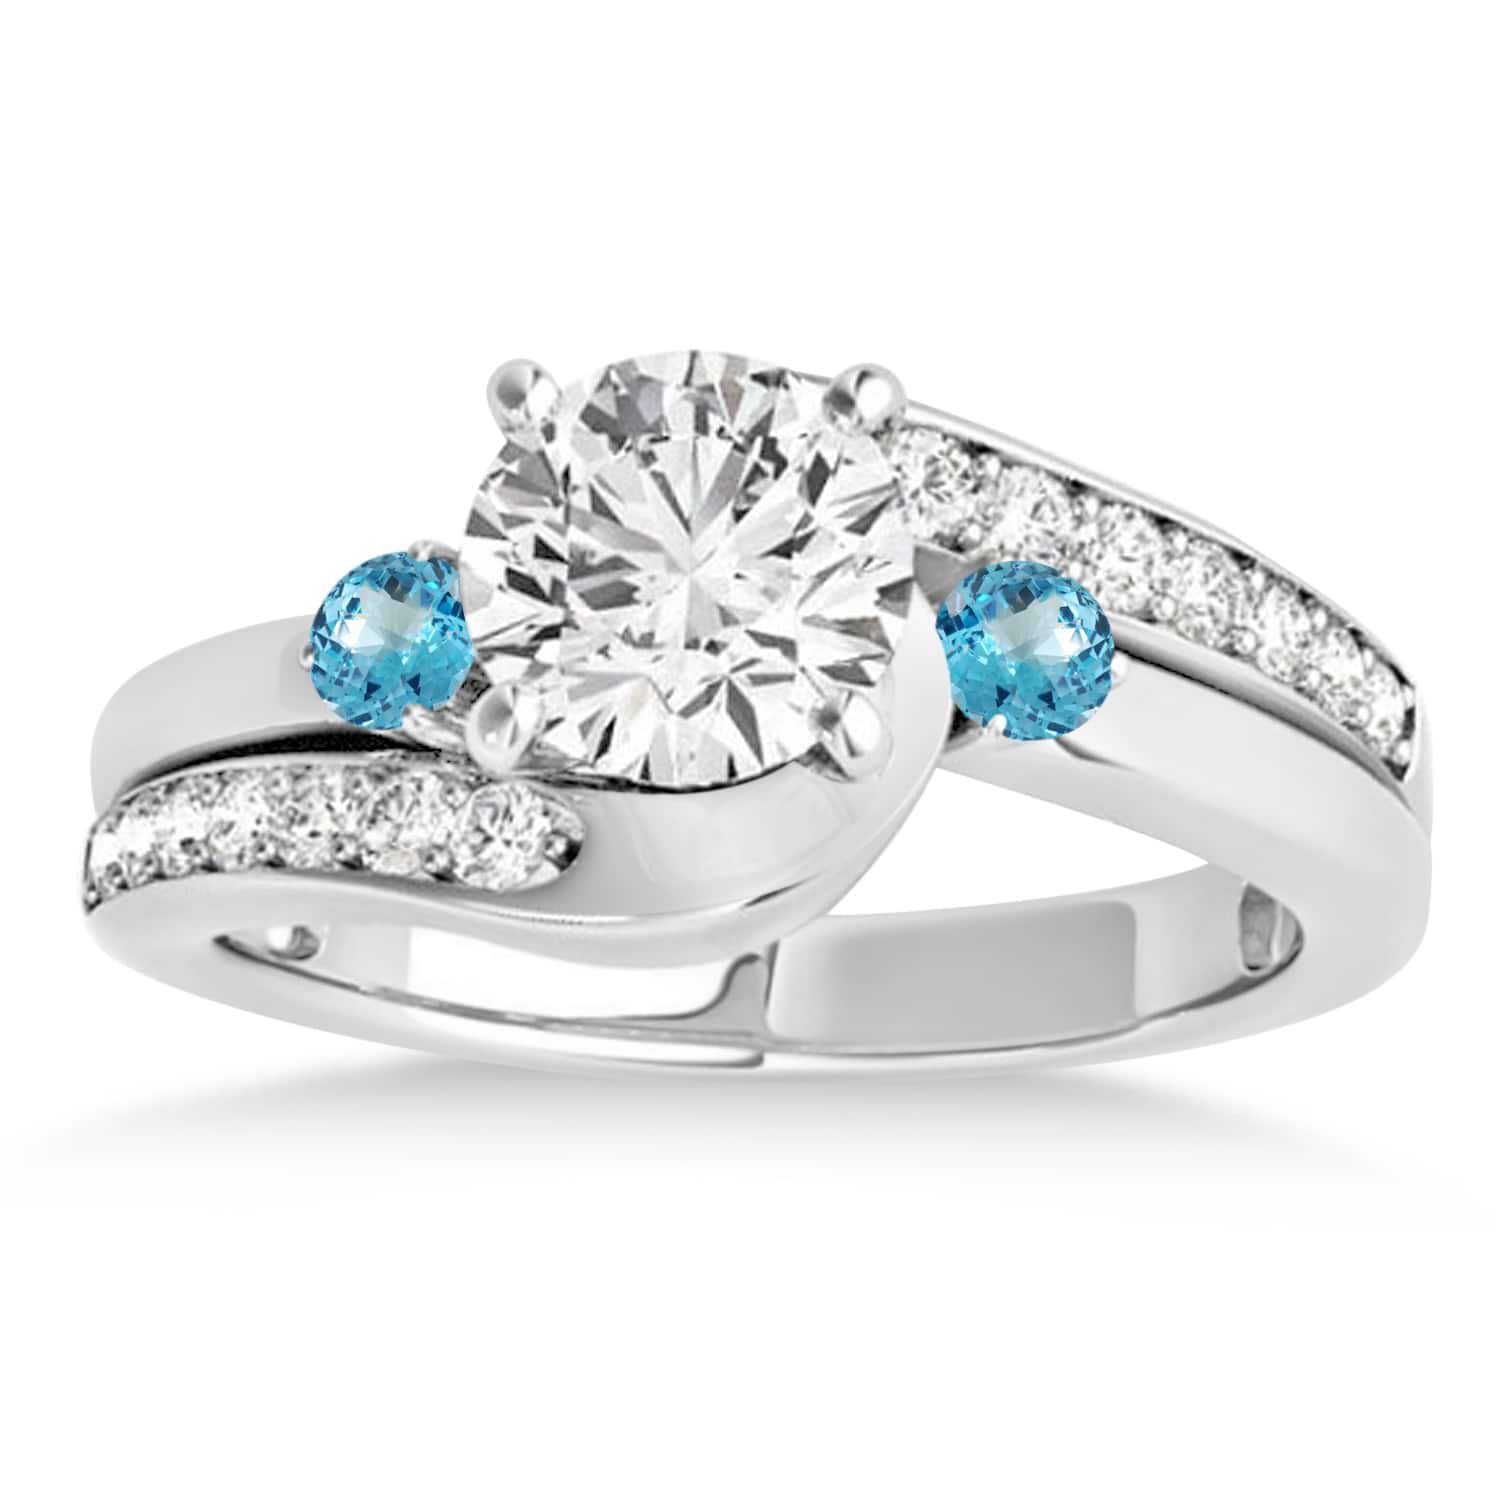 Swirl Design Blue Topaz & Diamond Engagement Ring Setting 14k White Gold 0.38ct